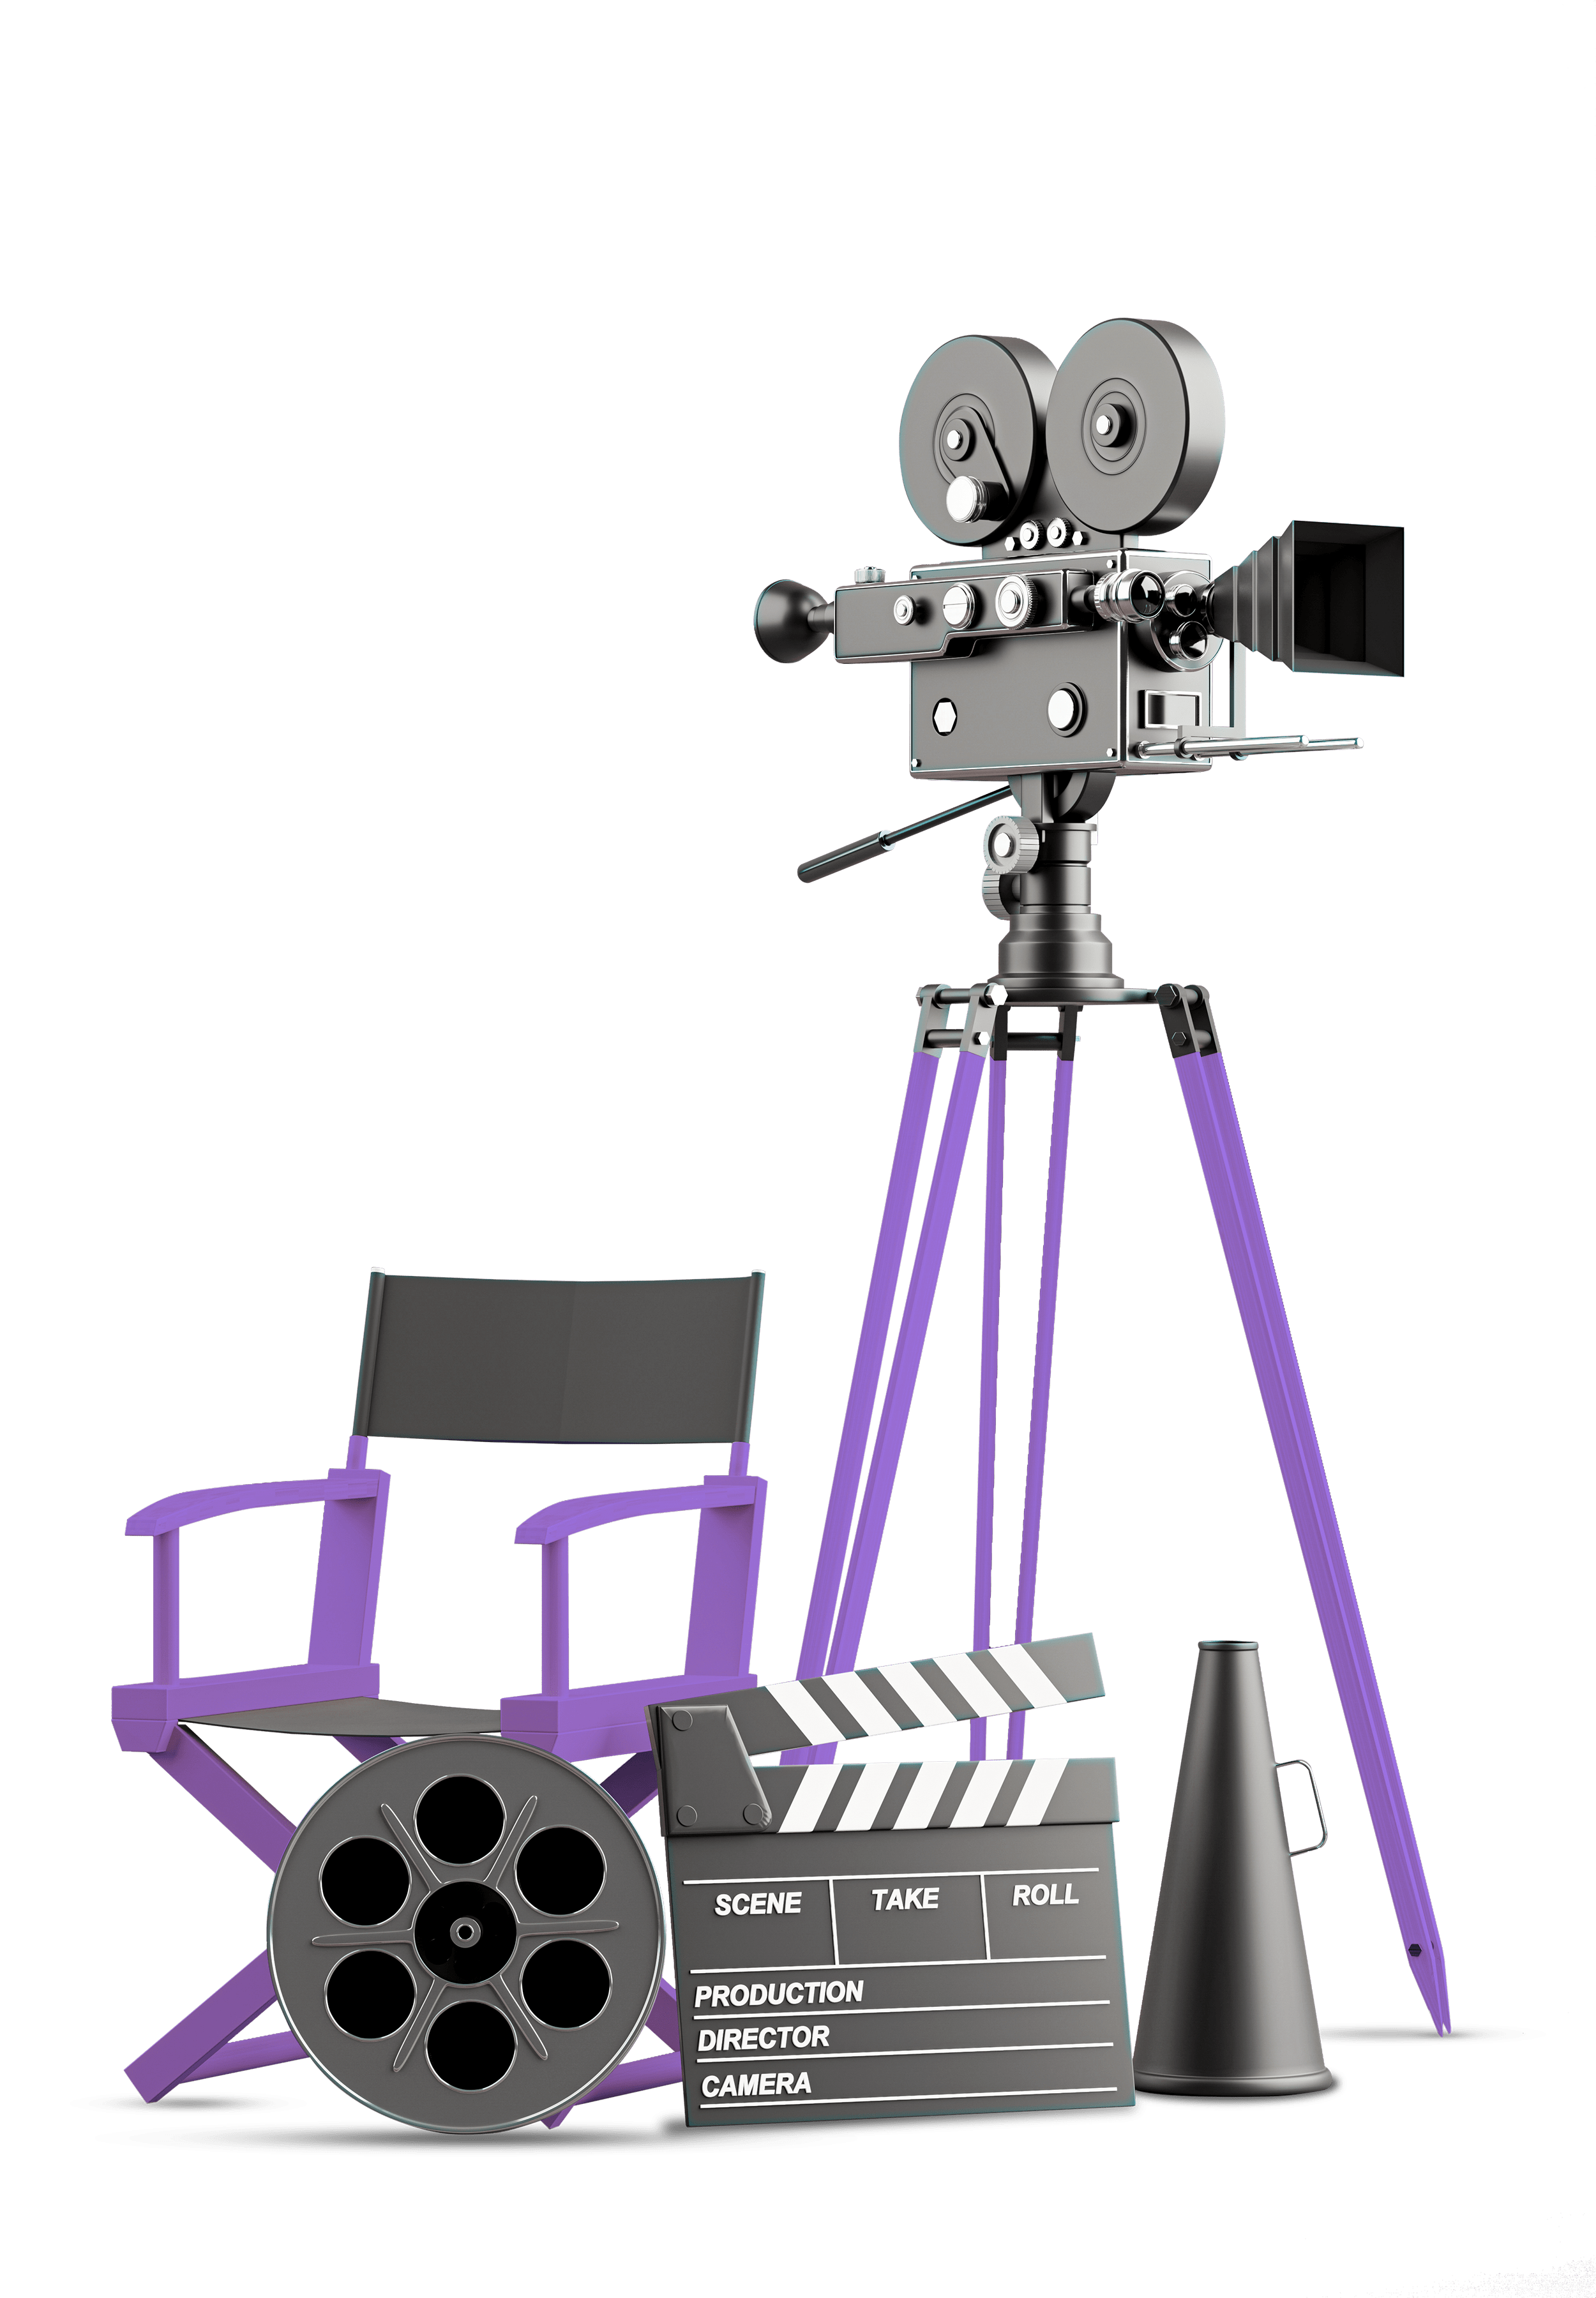 تصویری از دوربین که پایه‌های بنفش دارد و در کنار آن صندلی کارگردان به همراه یک کلاکت و نوار فیلم قرار گرفته است.